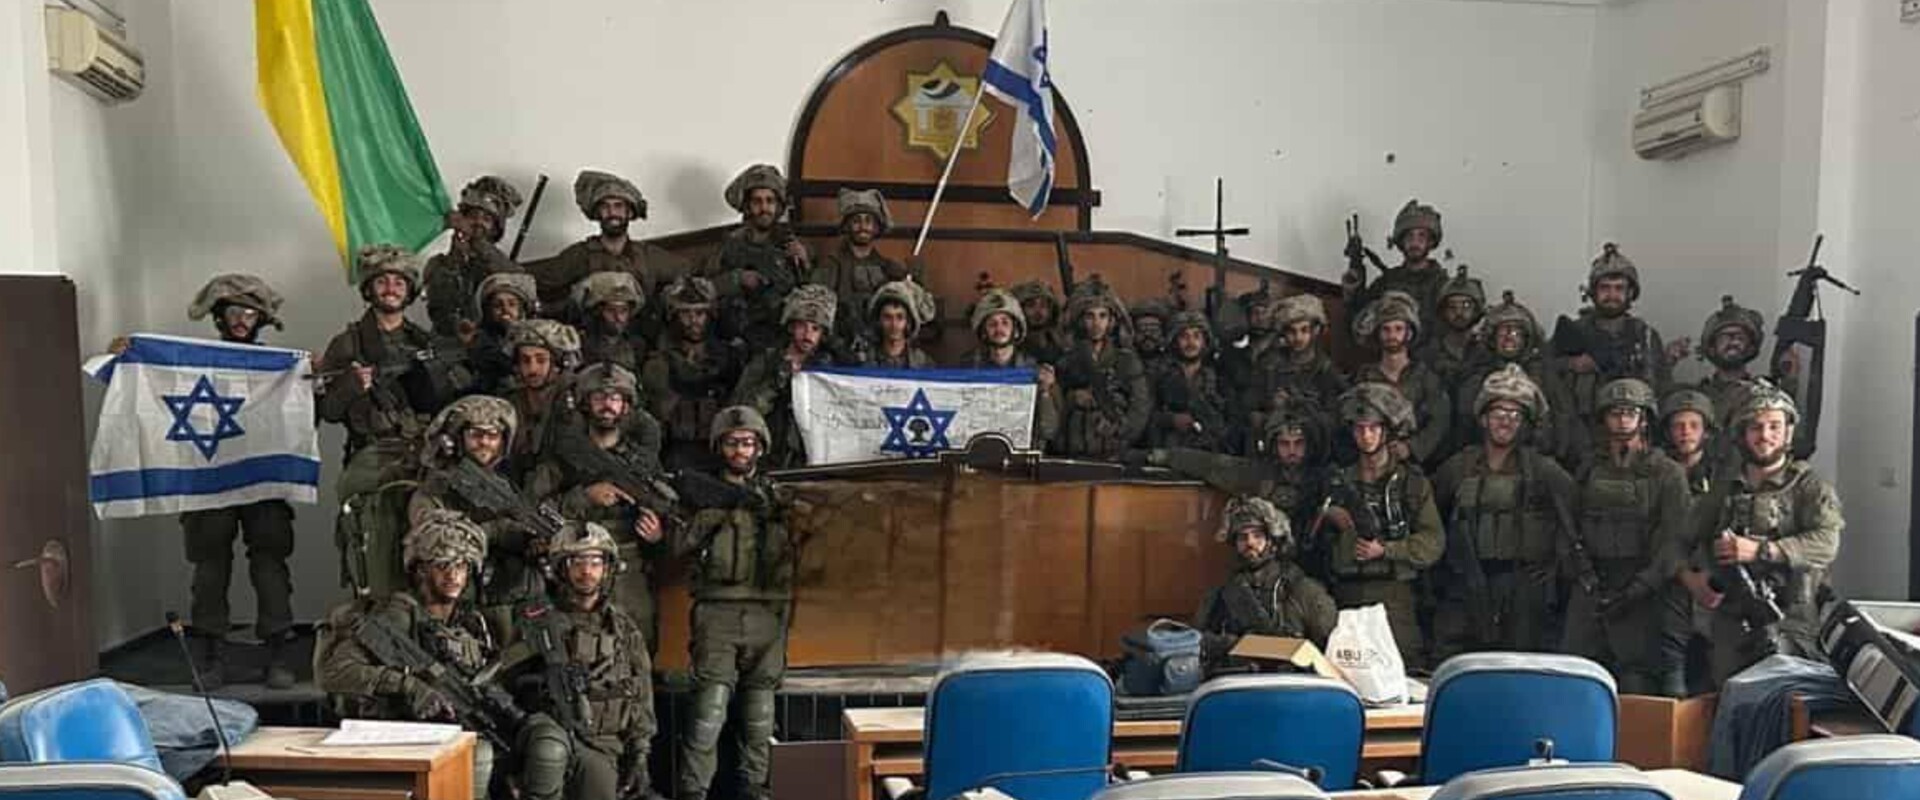 חיילי גולני בפרלמנט חמאס בעזה